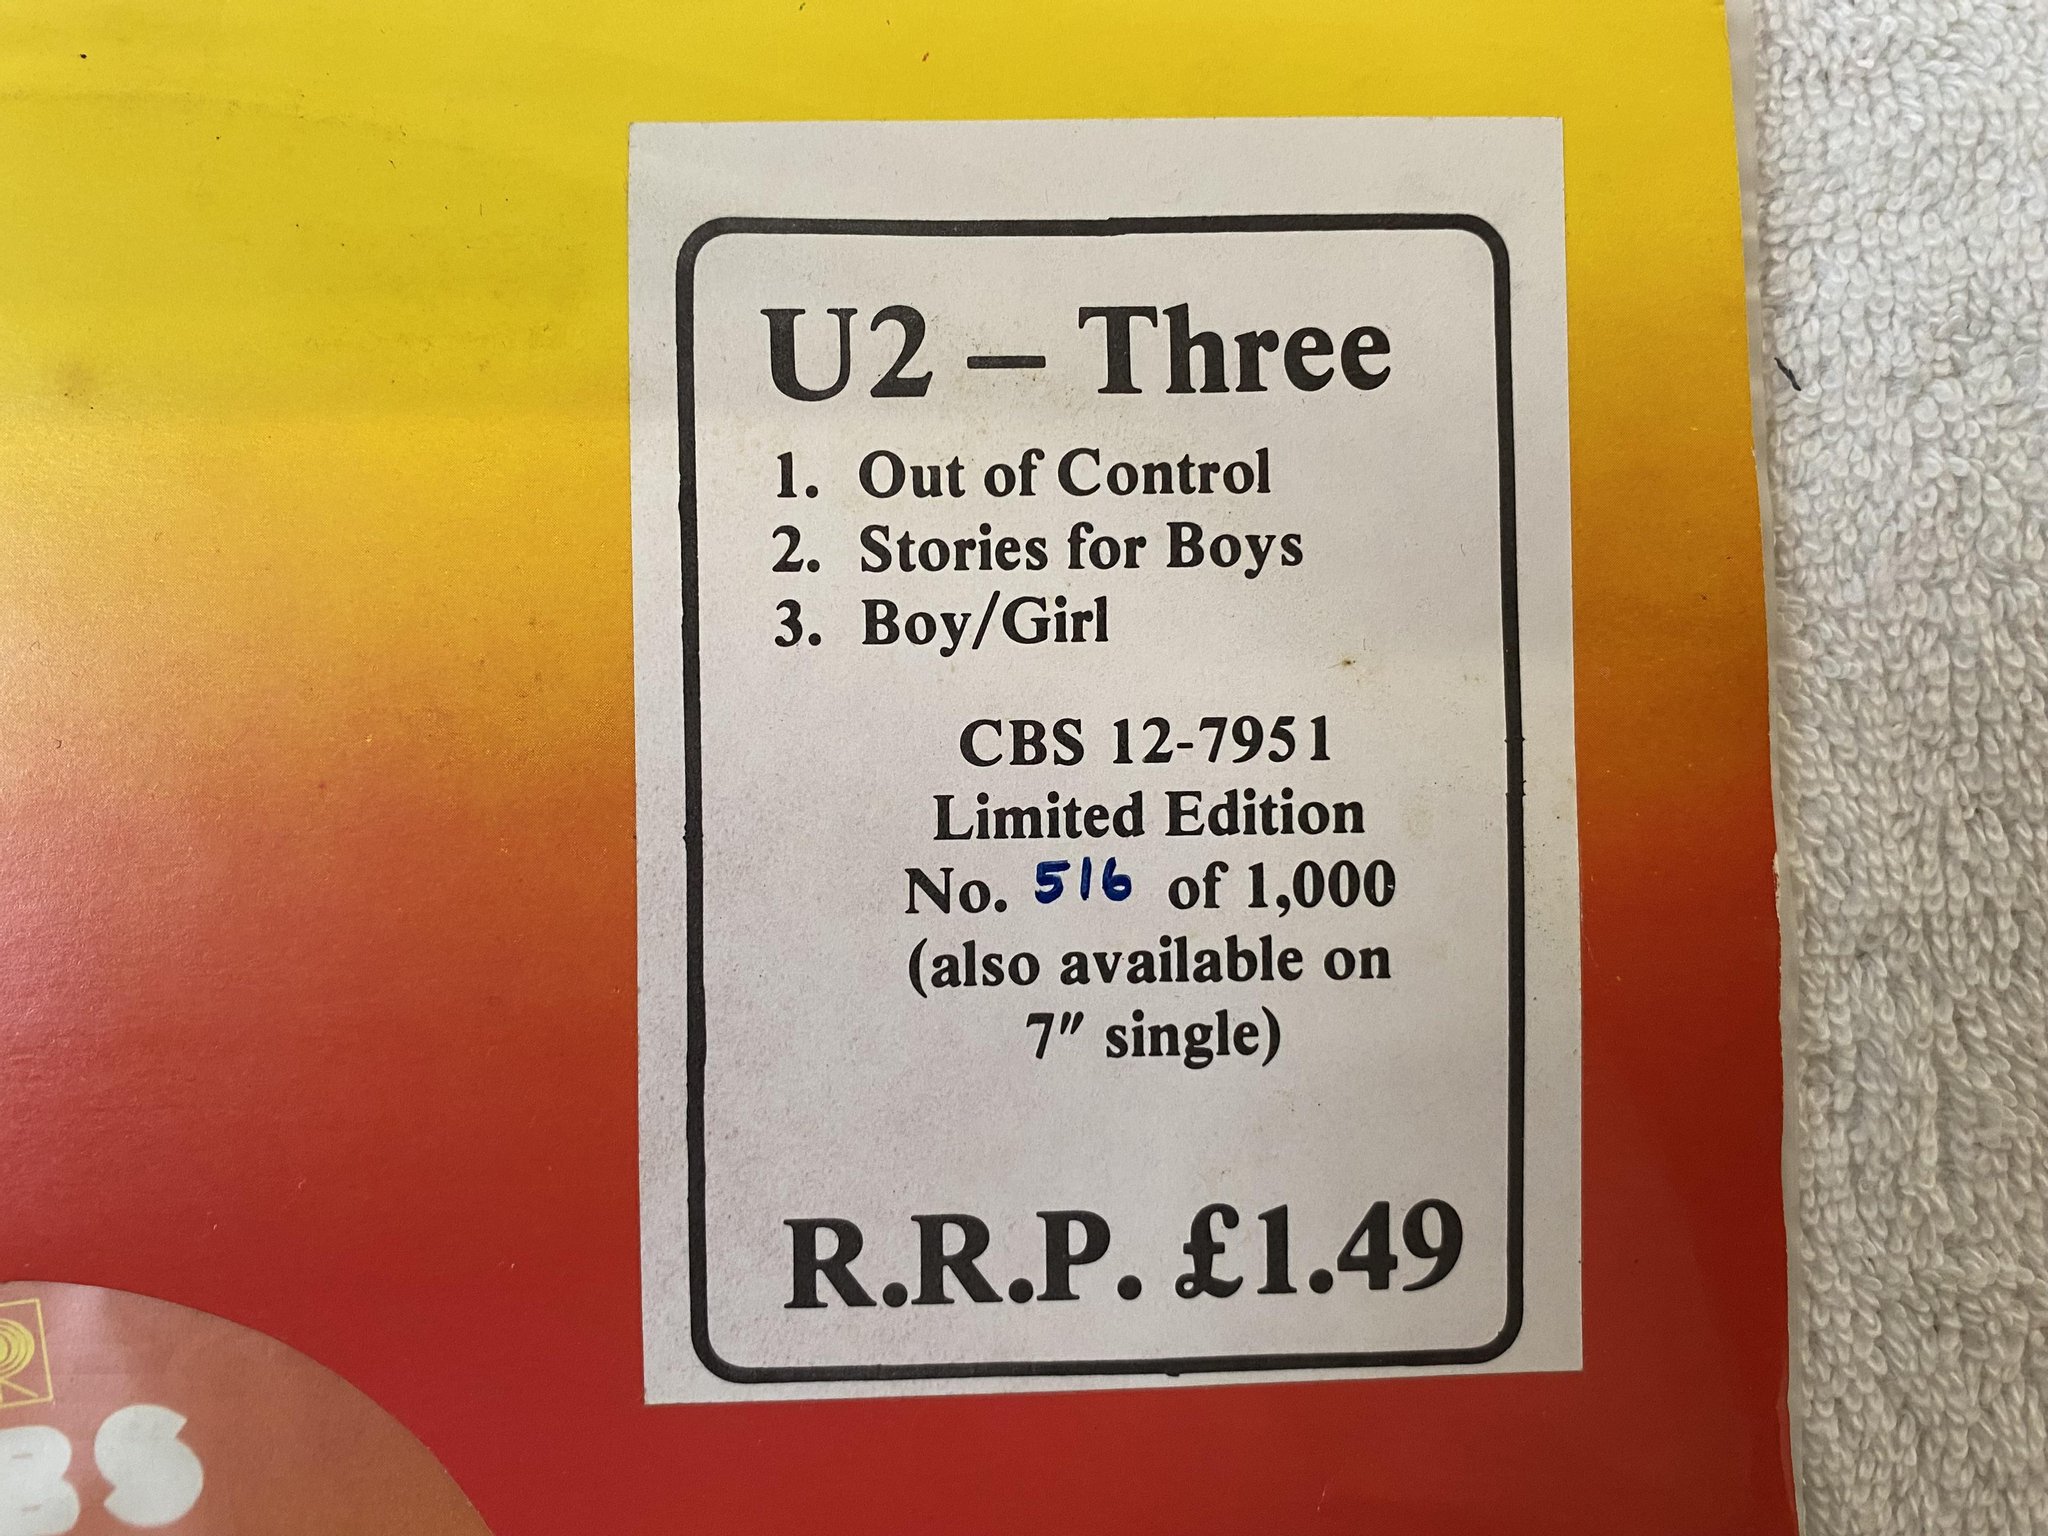 Omslagsbild för skivan U2 three 12"single -79 Ireland CBS 12-7951 **** ULTRA RARE LIMITED ORIGINAL ****